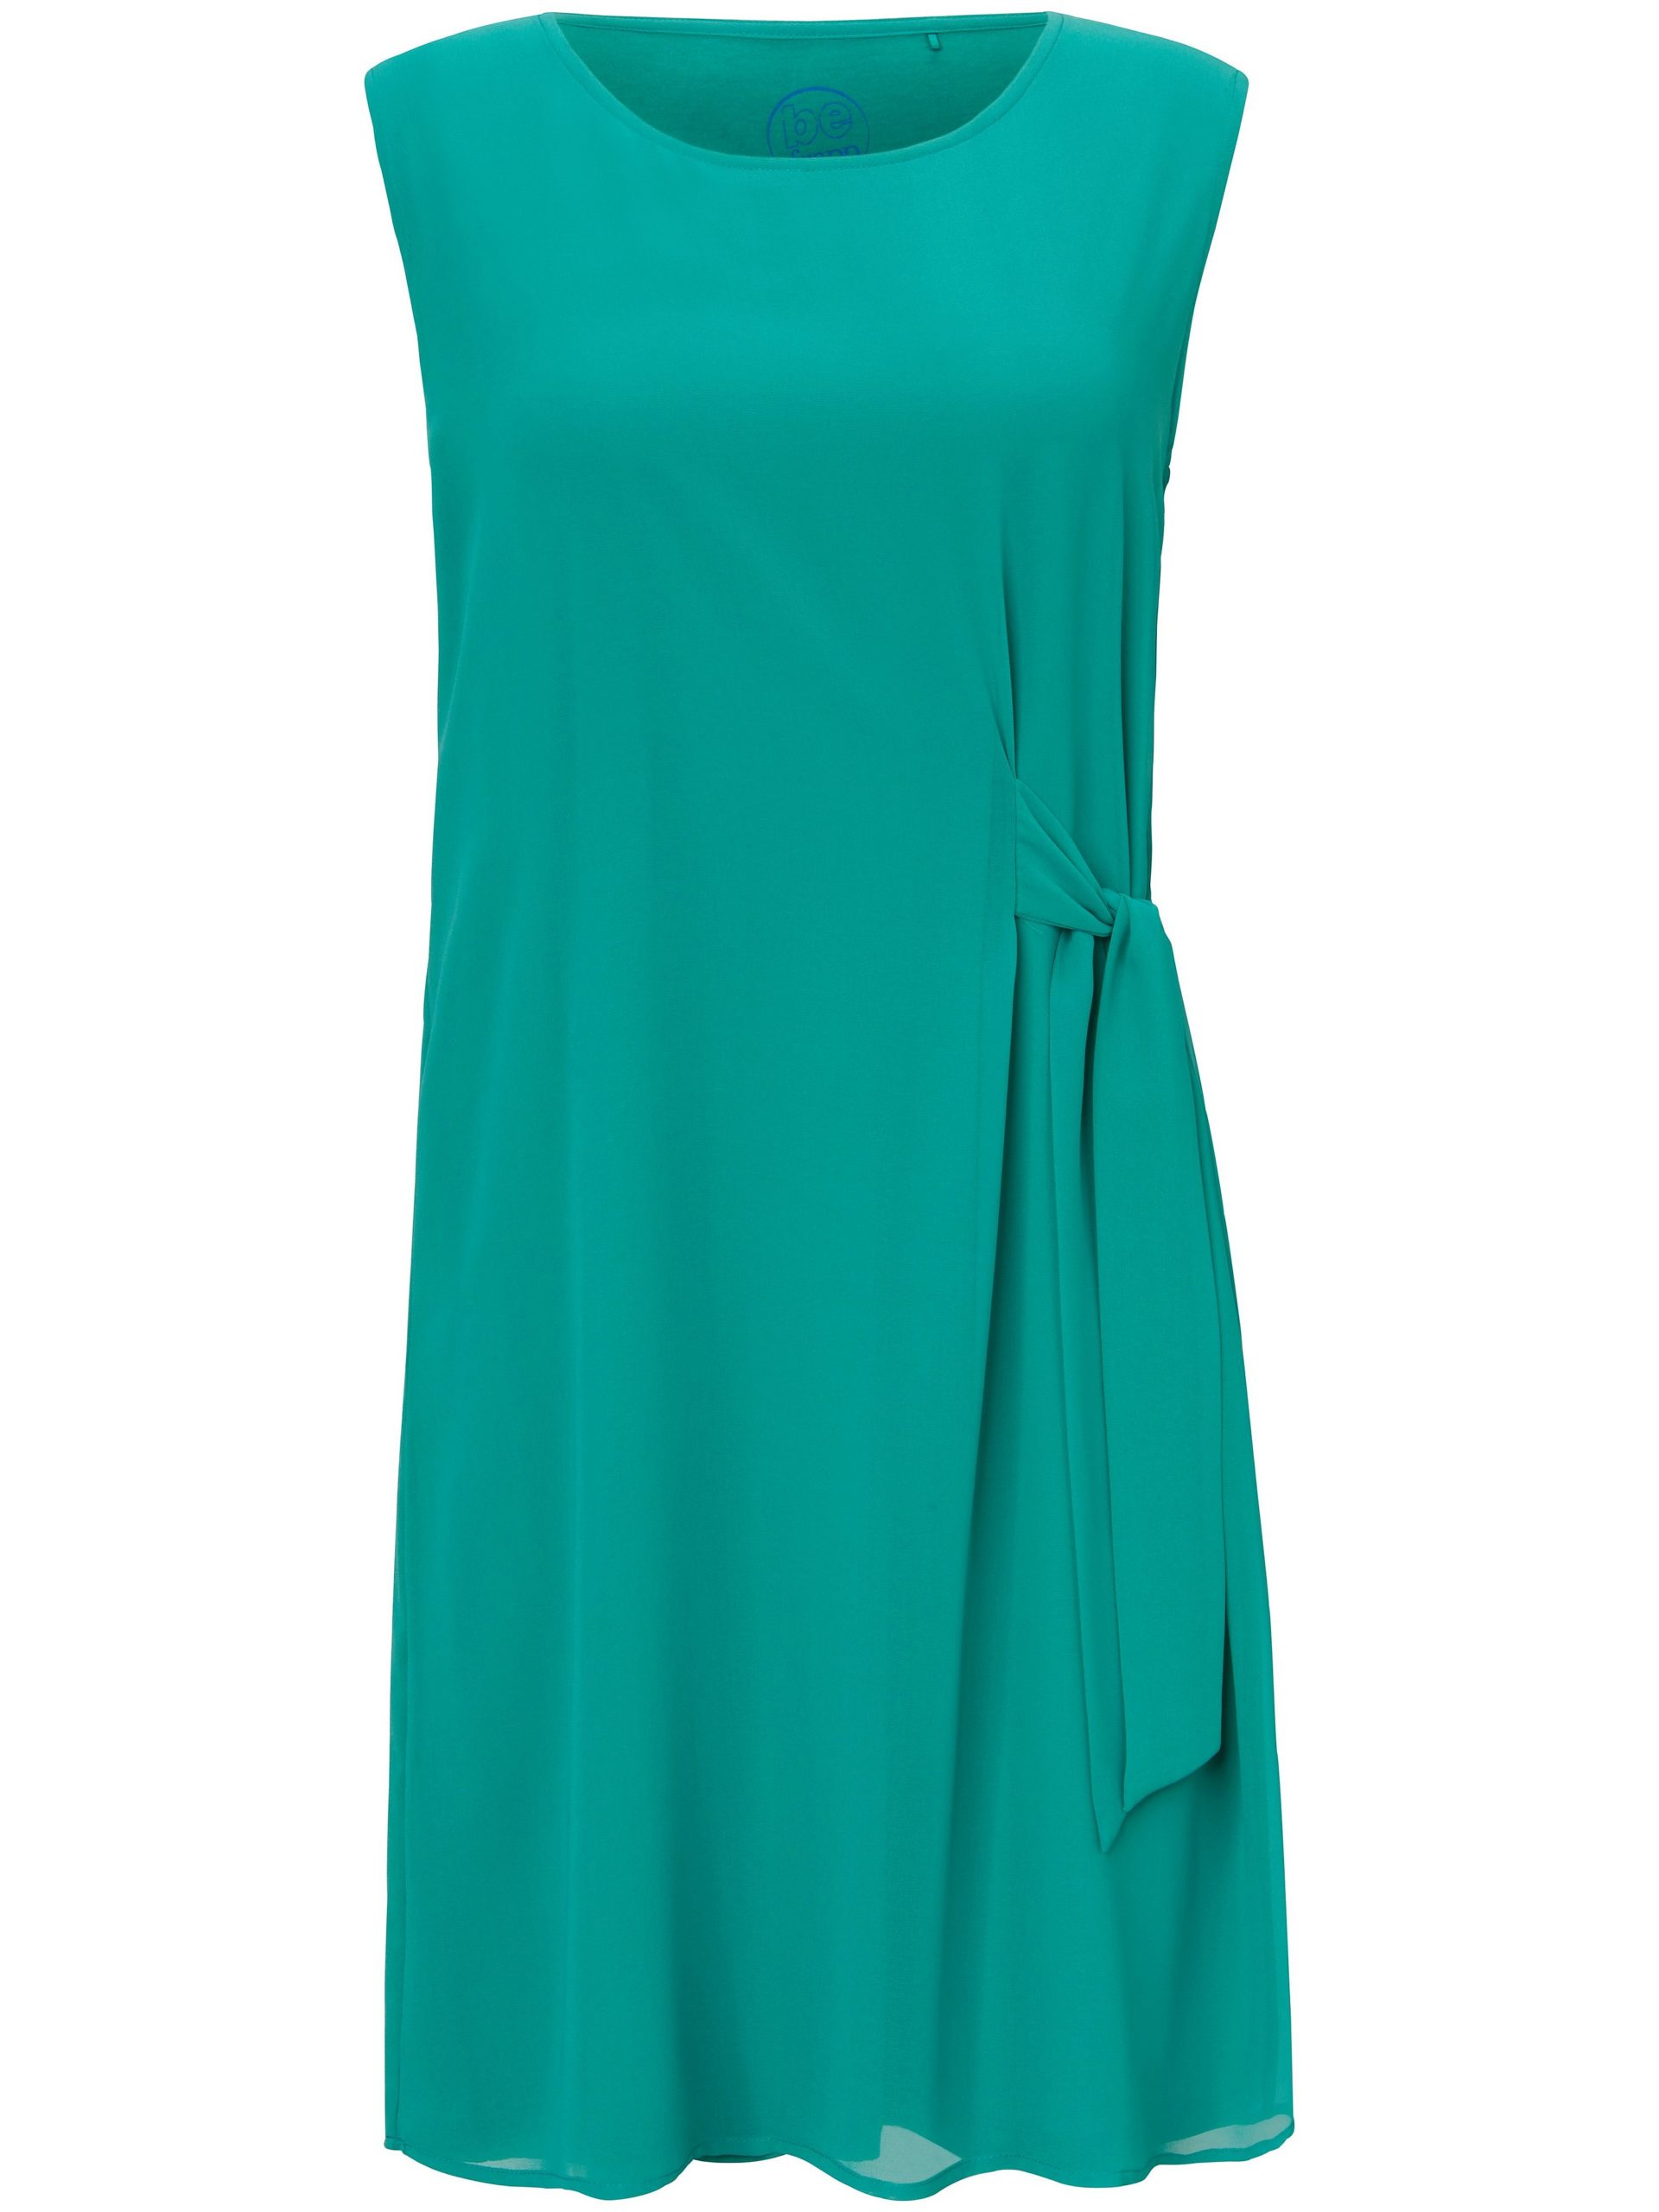 Mouwloze jurk in twee lagen Van FRAPP turquoise Kopen